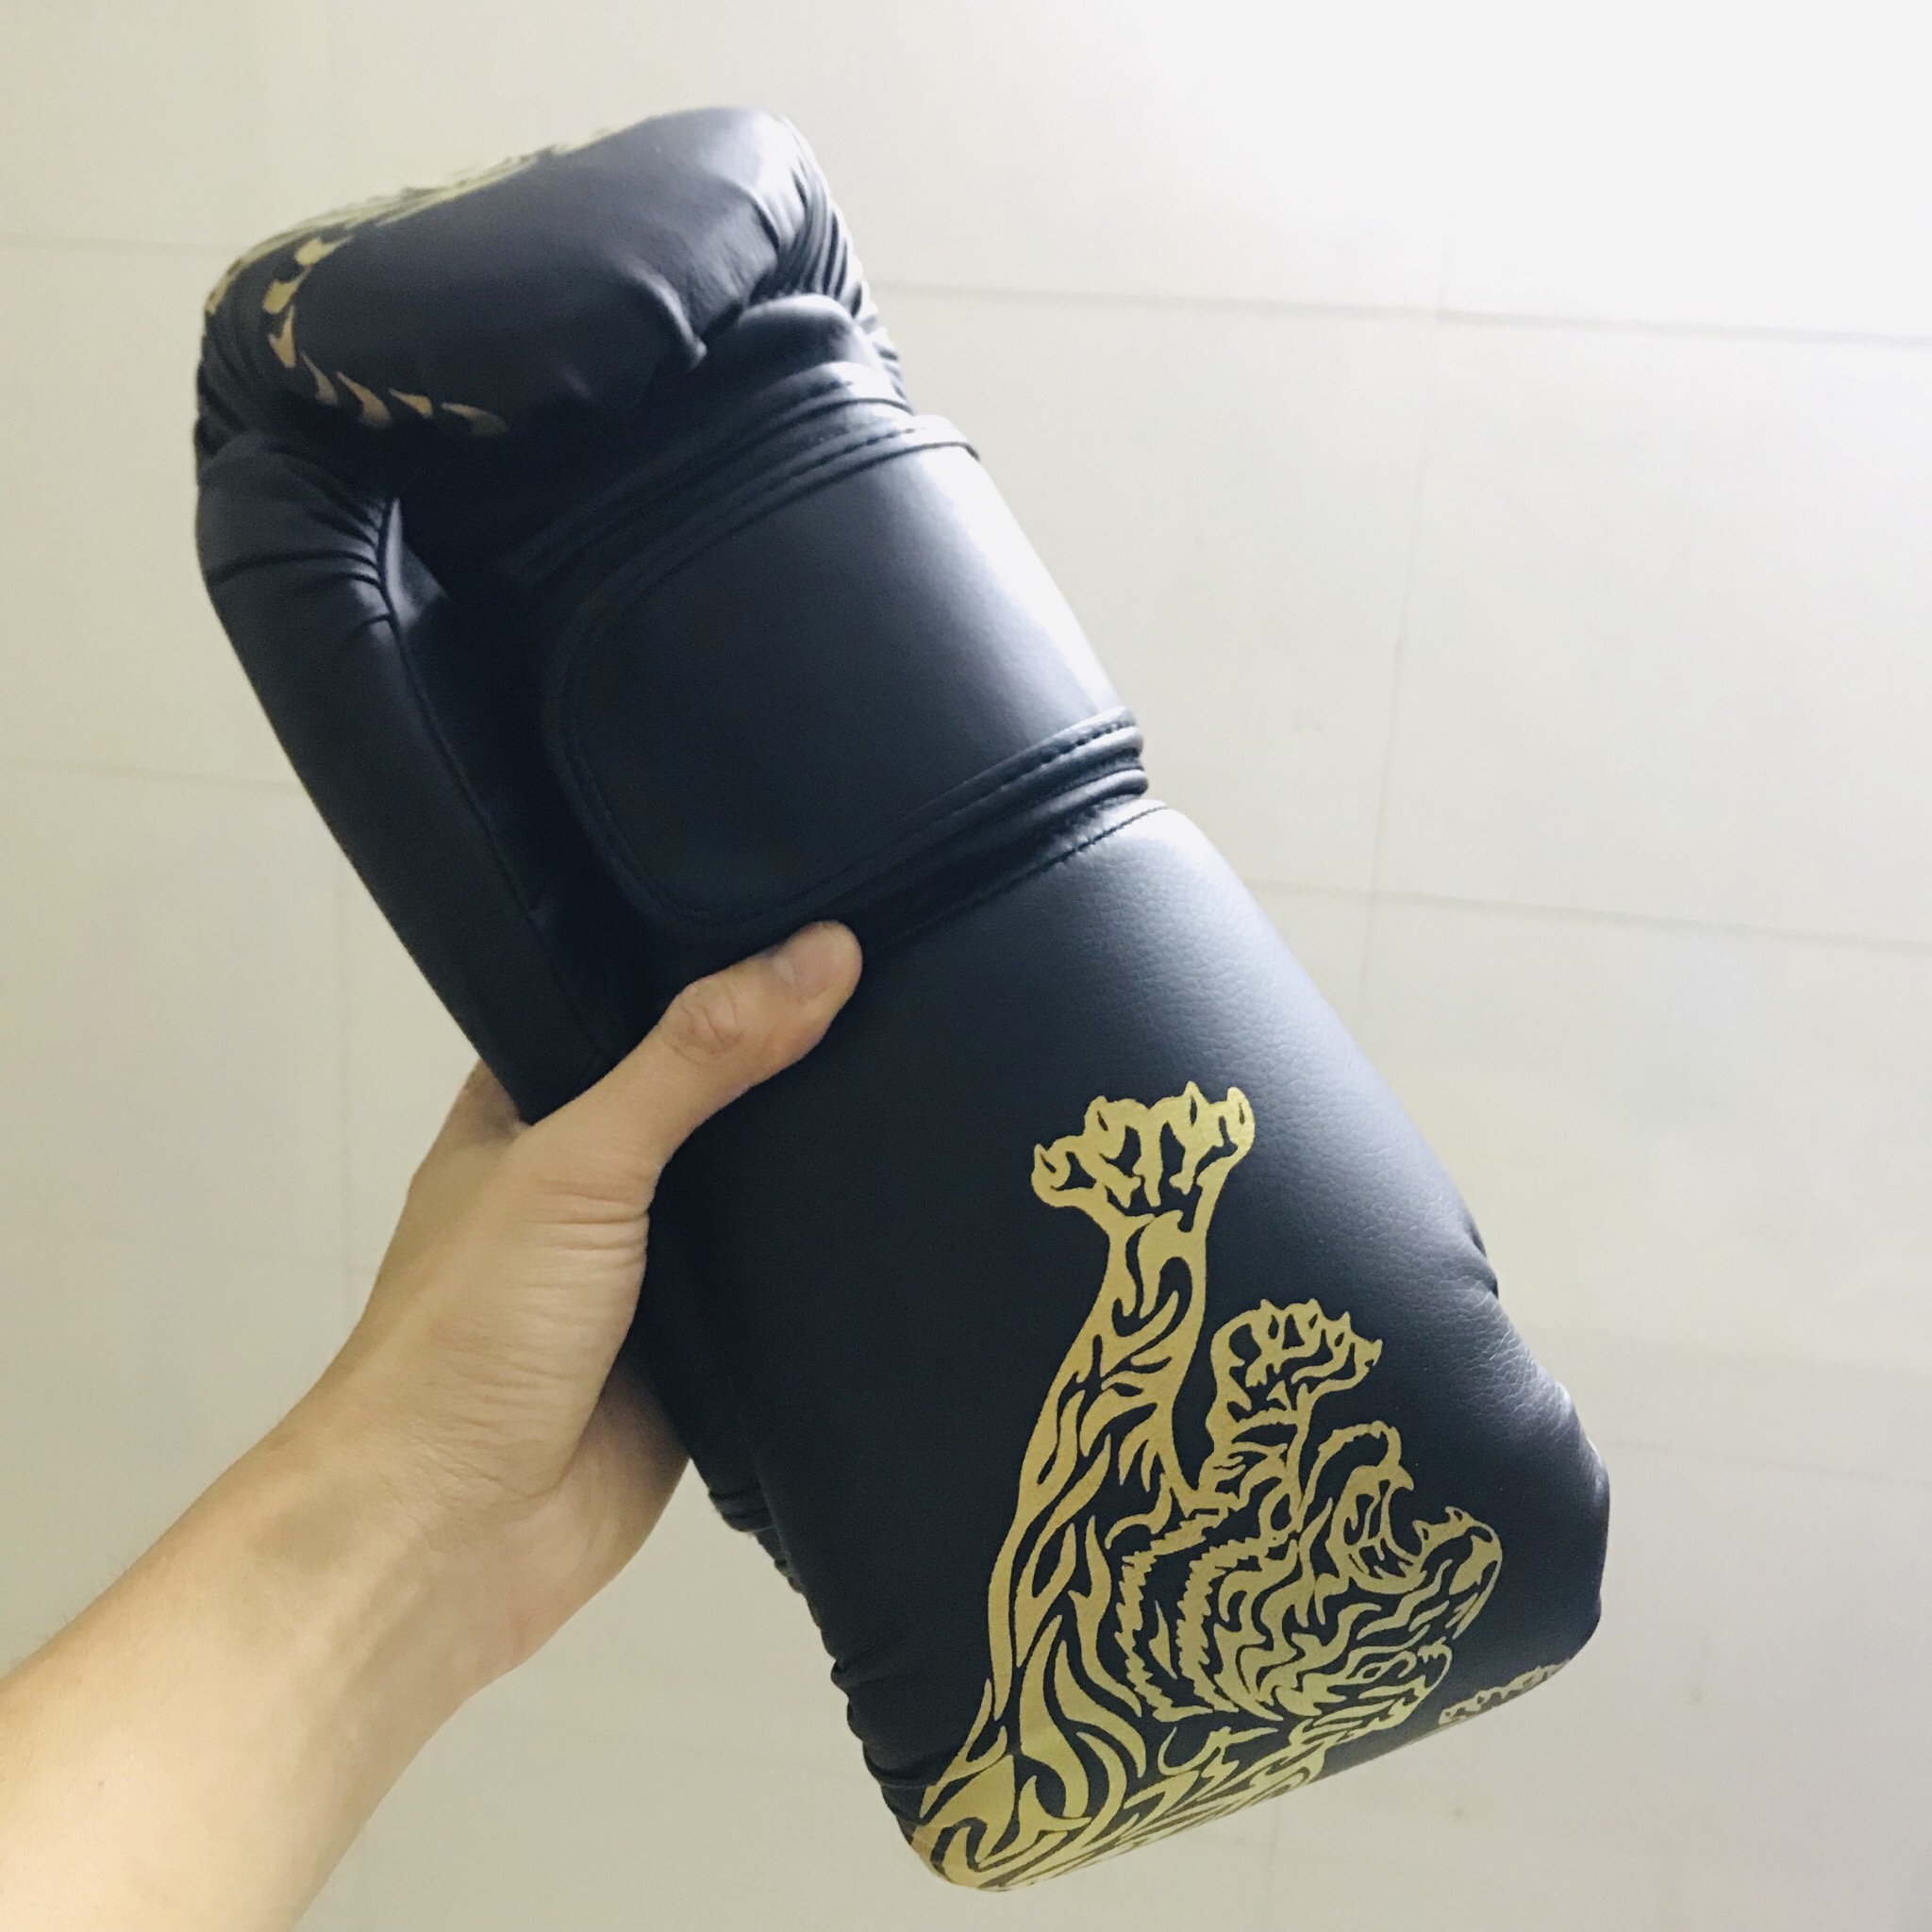 Găng Tay Boxing Đấm Bốc Người Lớn miDoctor